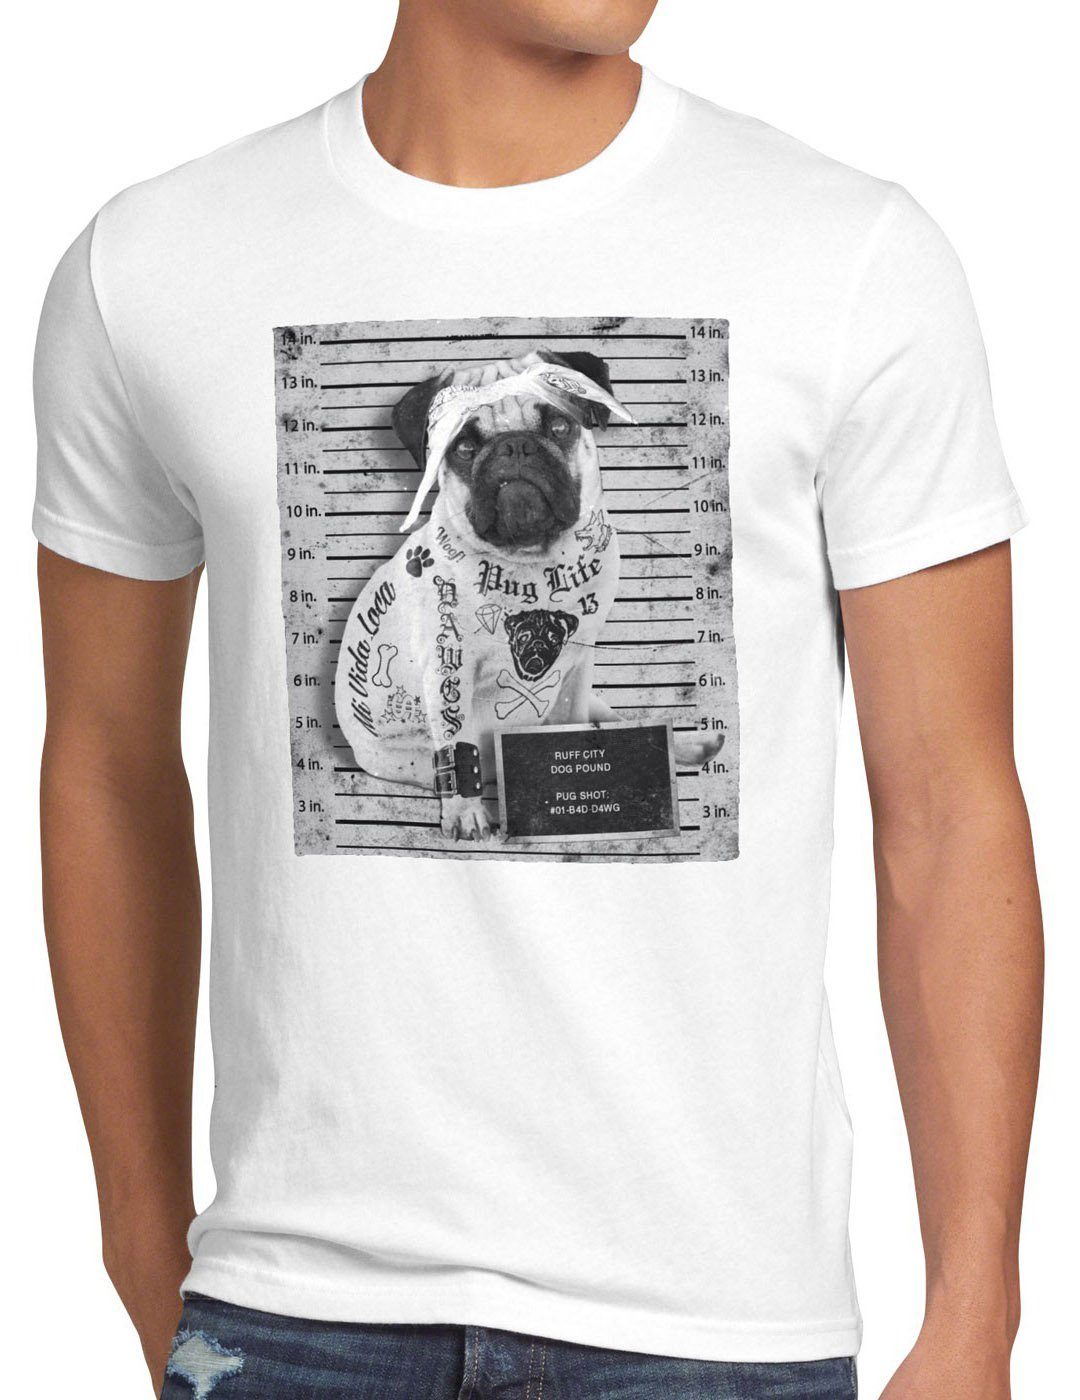 style3 Print-Shirt tätowiert inked hund Herren Mops biker T-Shirt Tattoo weiß us rock pug gangster punk